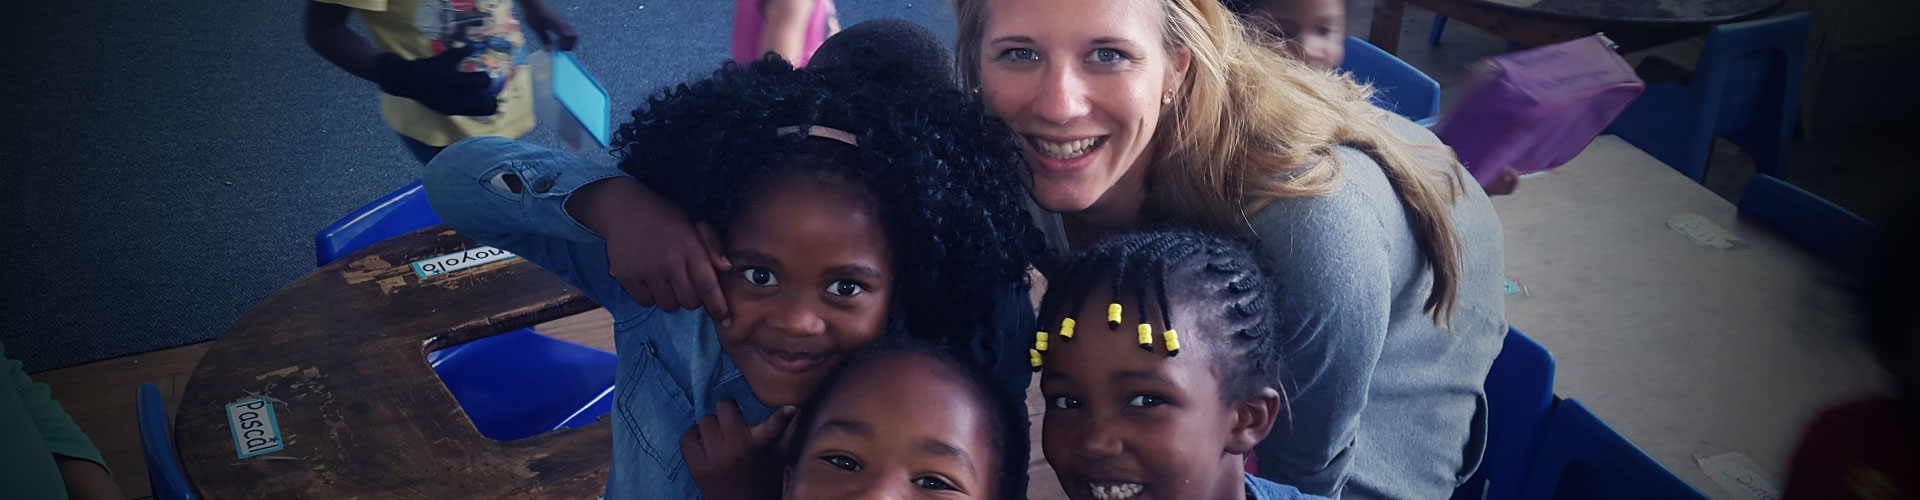 Voluntariado de cuidado infantil y bienestar social en Sudáfrica